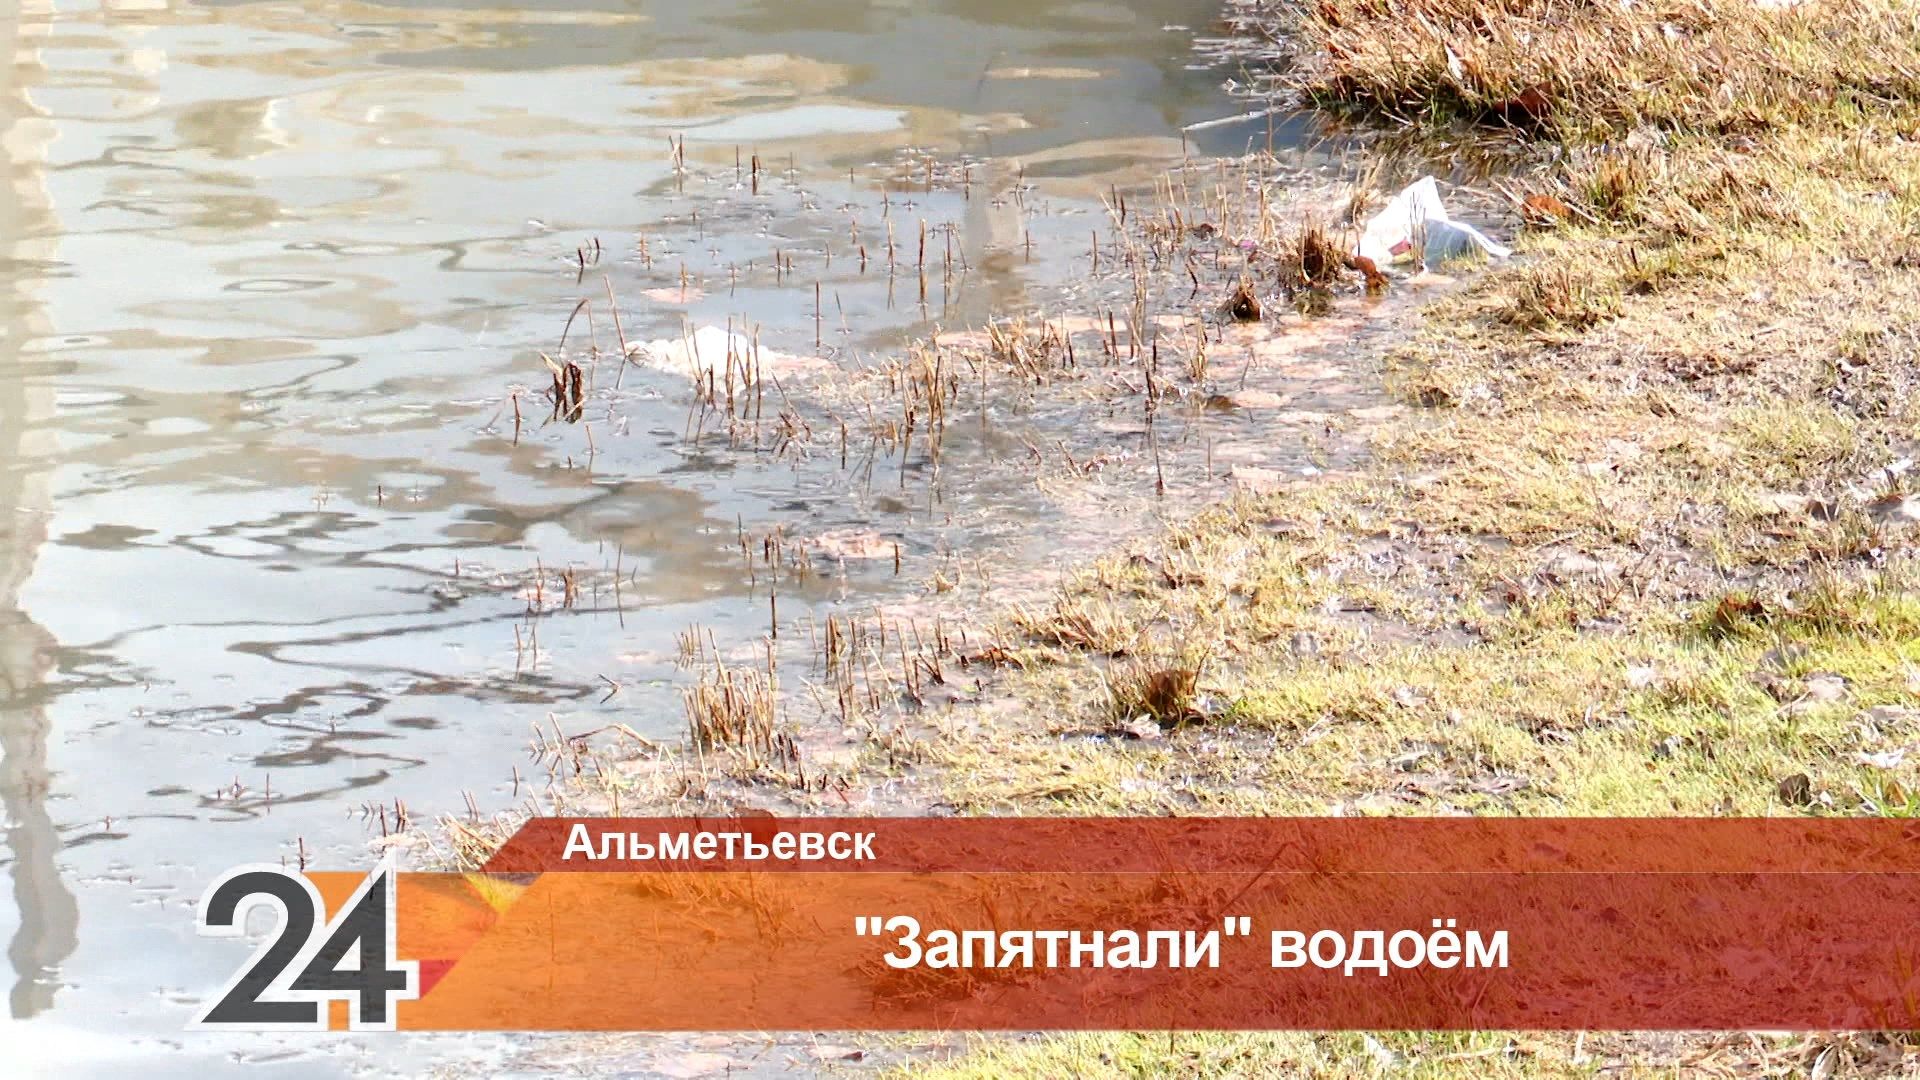 Масляное пятно в парке Альметьевска вызвало обеспокоенность местных жителей